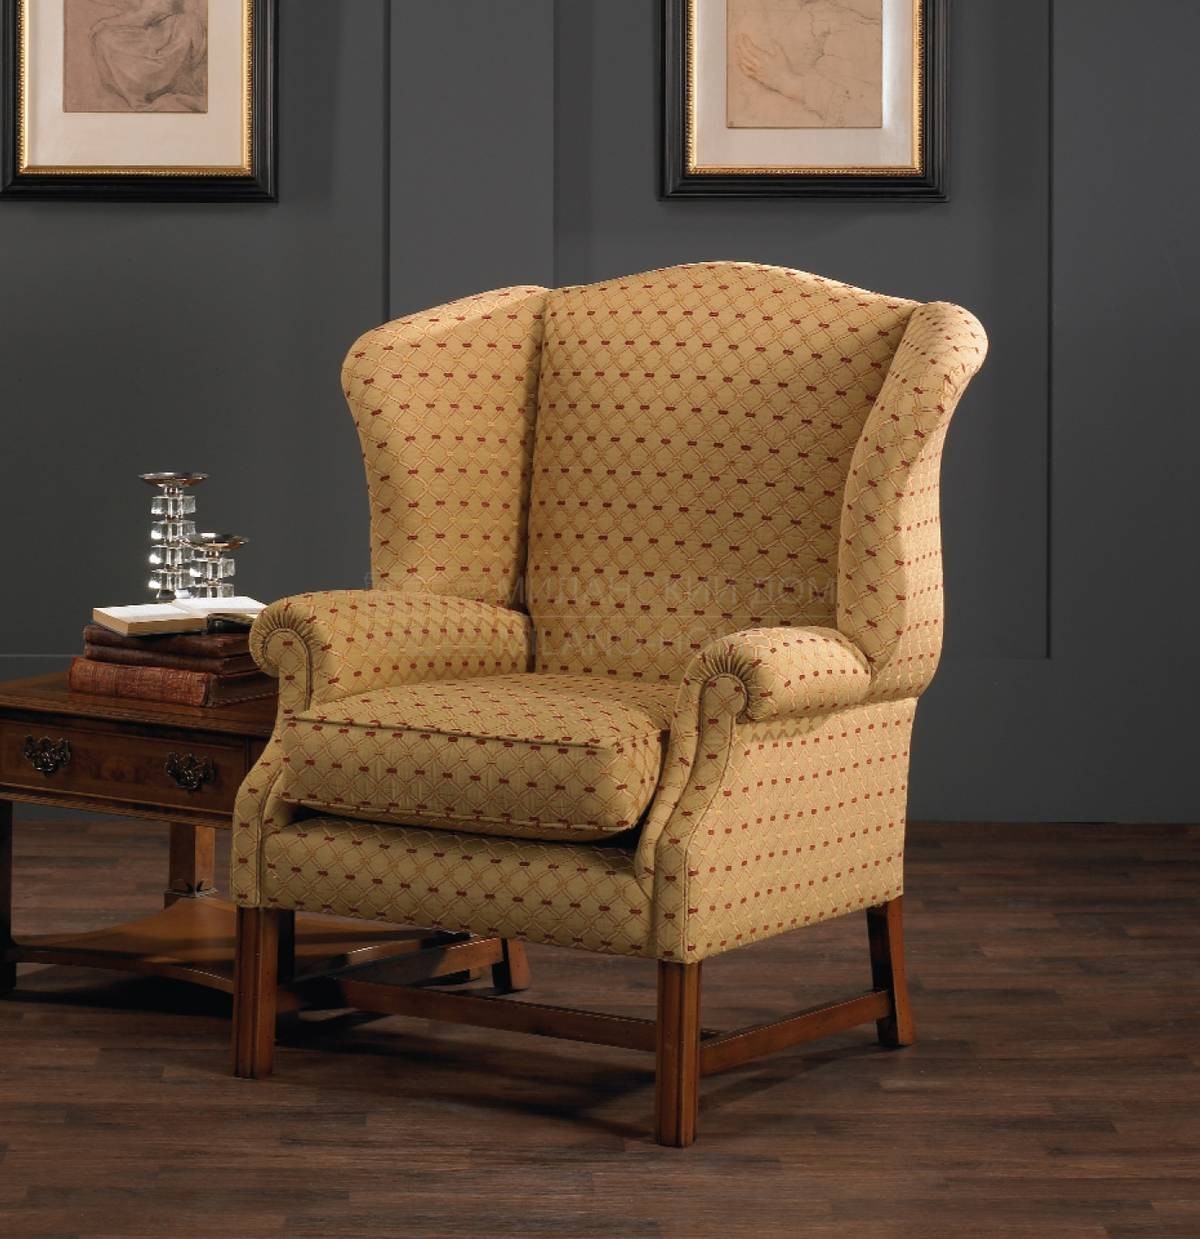 Каминное кресло Oxford/armchair из Великобритании фабрики DAVID GUNDRY